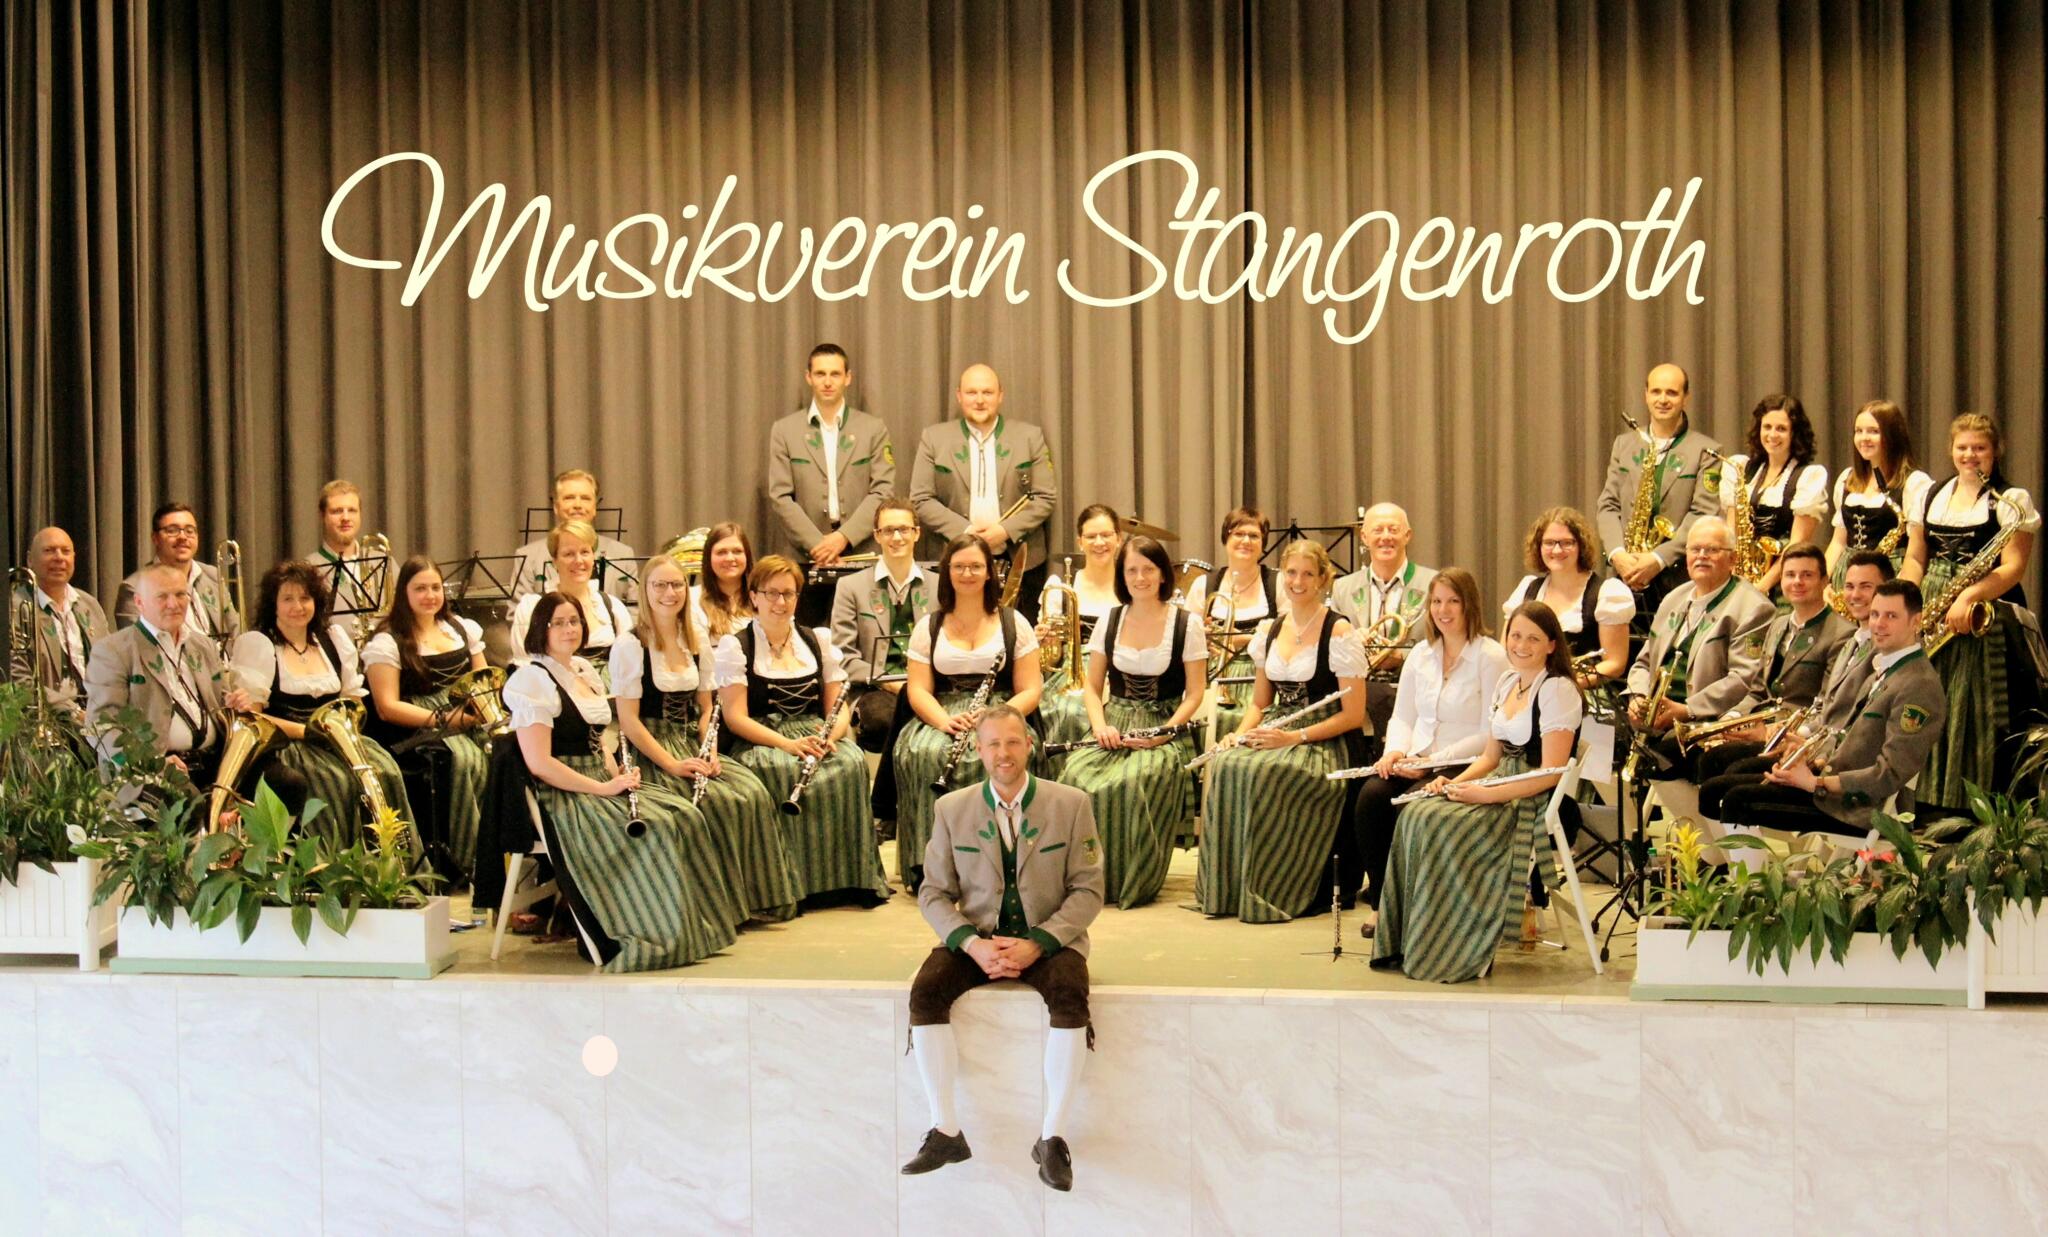 Du betrachtest gerade Mittwoch, 10.07., 18-20 Uhr, Musikverein Stangenroth! (entfällt bei Regen)